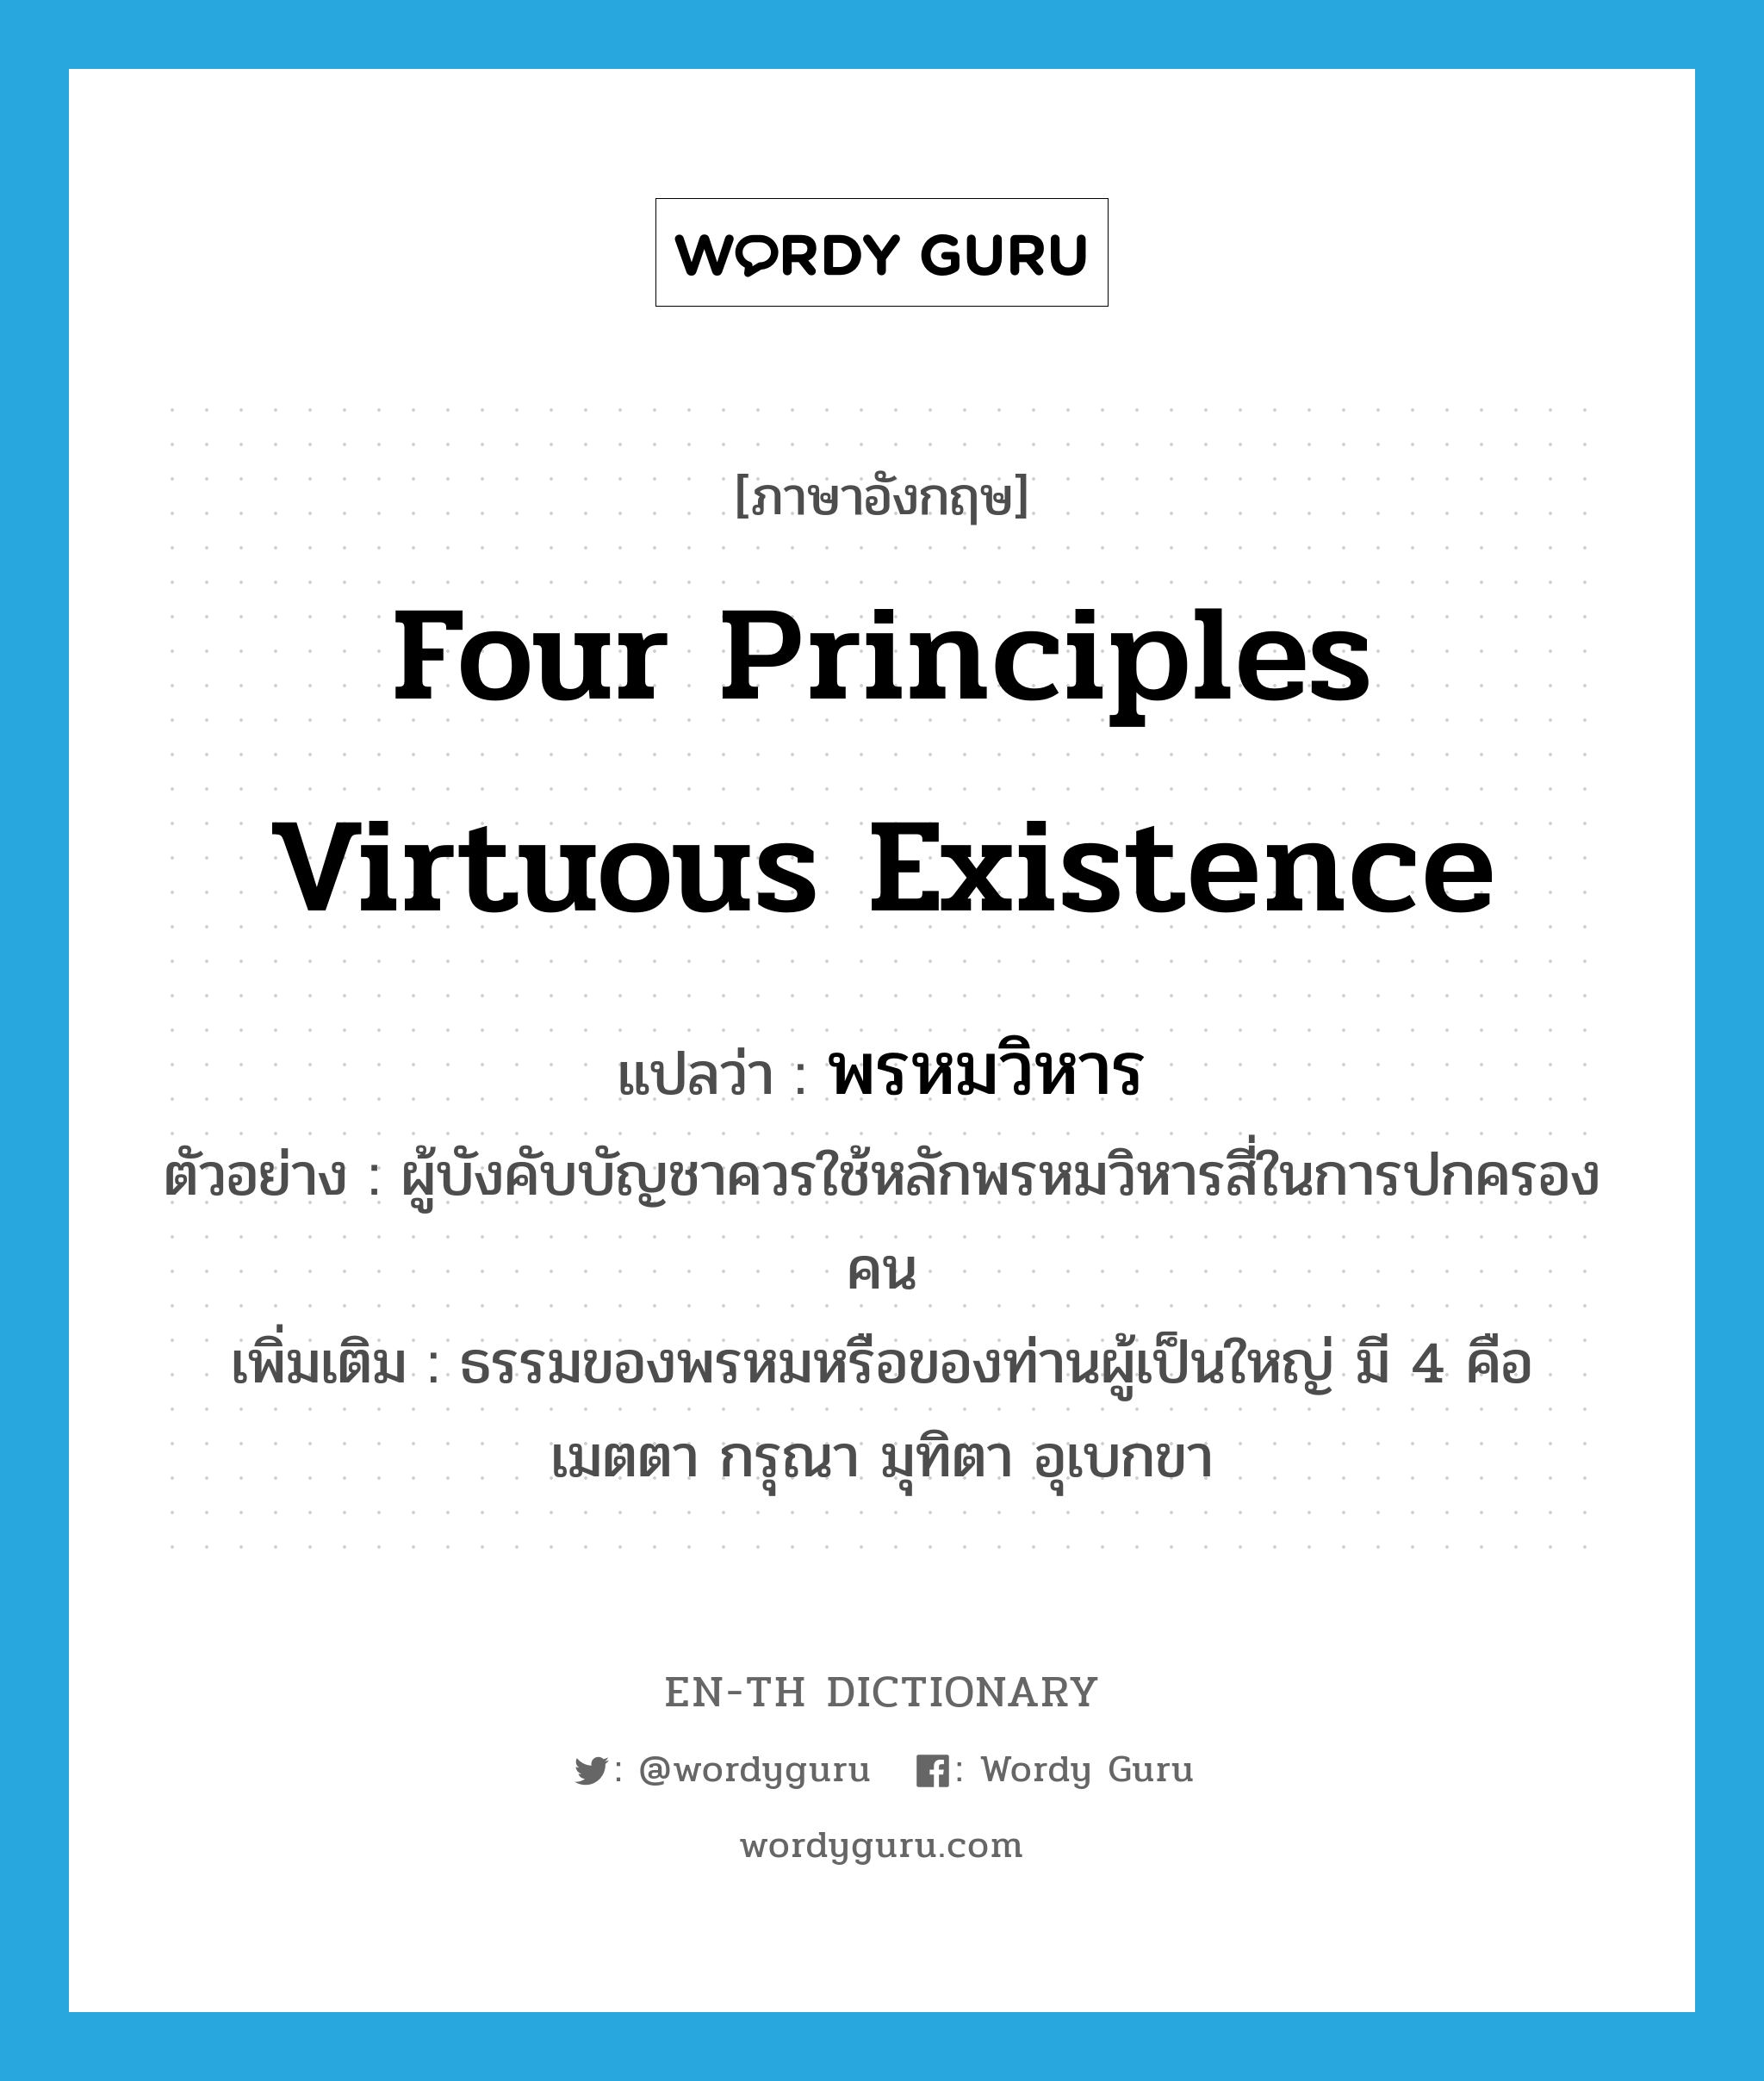 four principles virtuous existence แปลว่า?, คำศัพท์ภาษาอังกฤษ four principles virtuous existence แปลว่า พรหมวิหาร ประเภท N ตัวอย่าง ผู้บังคับบัญชาควรใช้หลักพรหมวิหารสี่ในการปกครองคน เพิ่มเติม ธรรมของพรหมหรือของท่านผู้เป็นใหญ่ มี 4 คือ เมตตา กรุณา มุทิตา อุเบกขา หมวด N